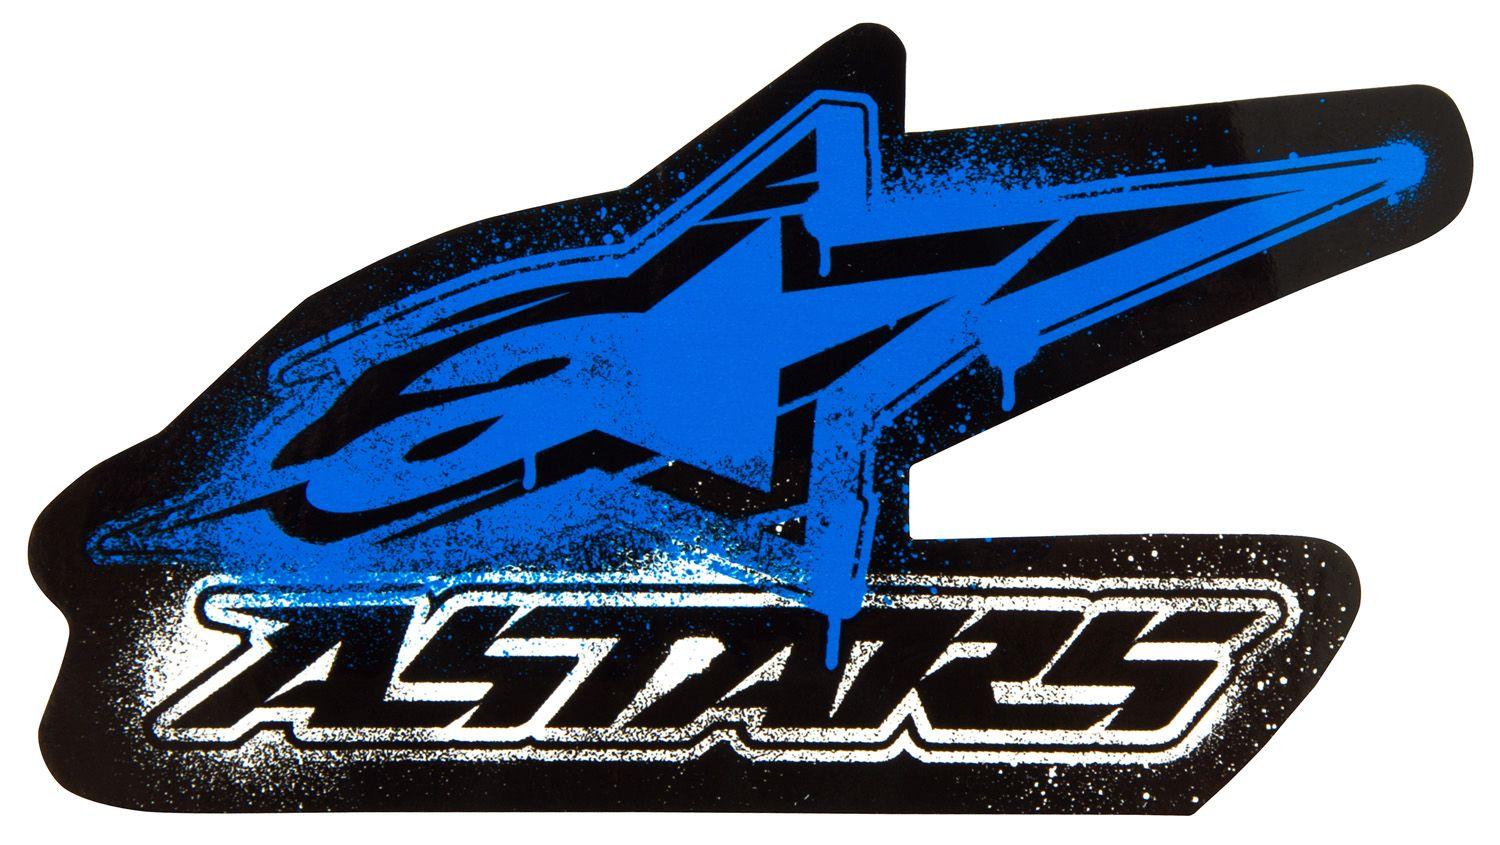 Alpinestar Logo Wallpaper